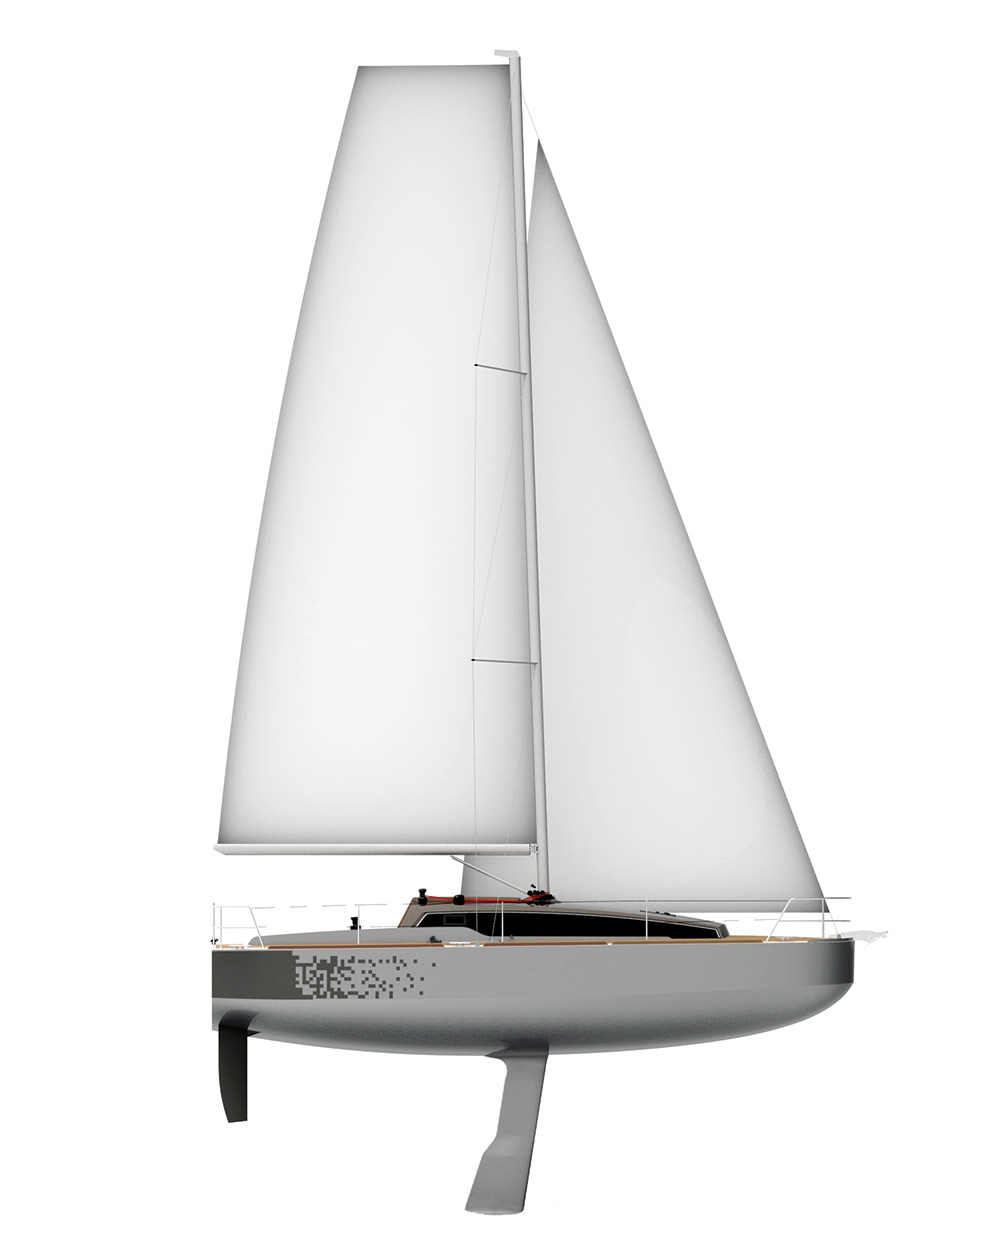 revolution 29 sailboat